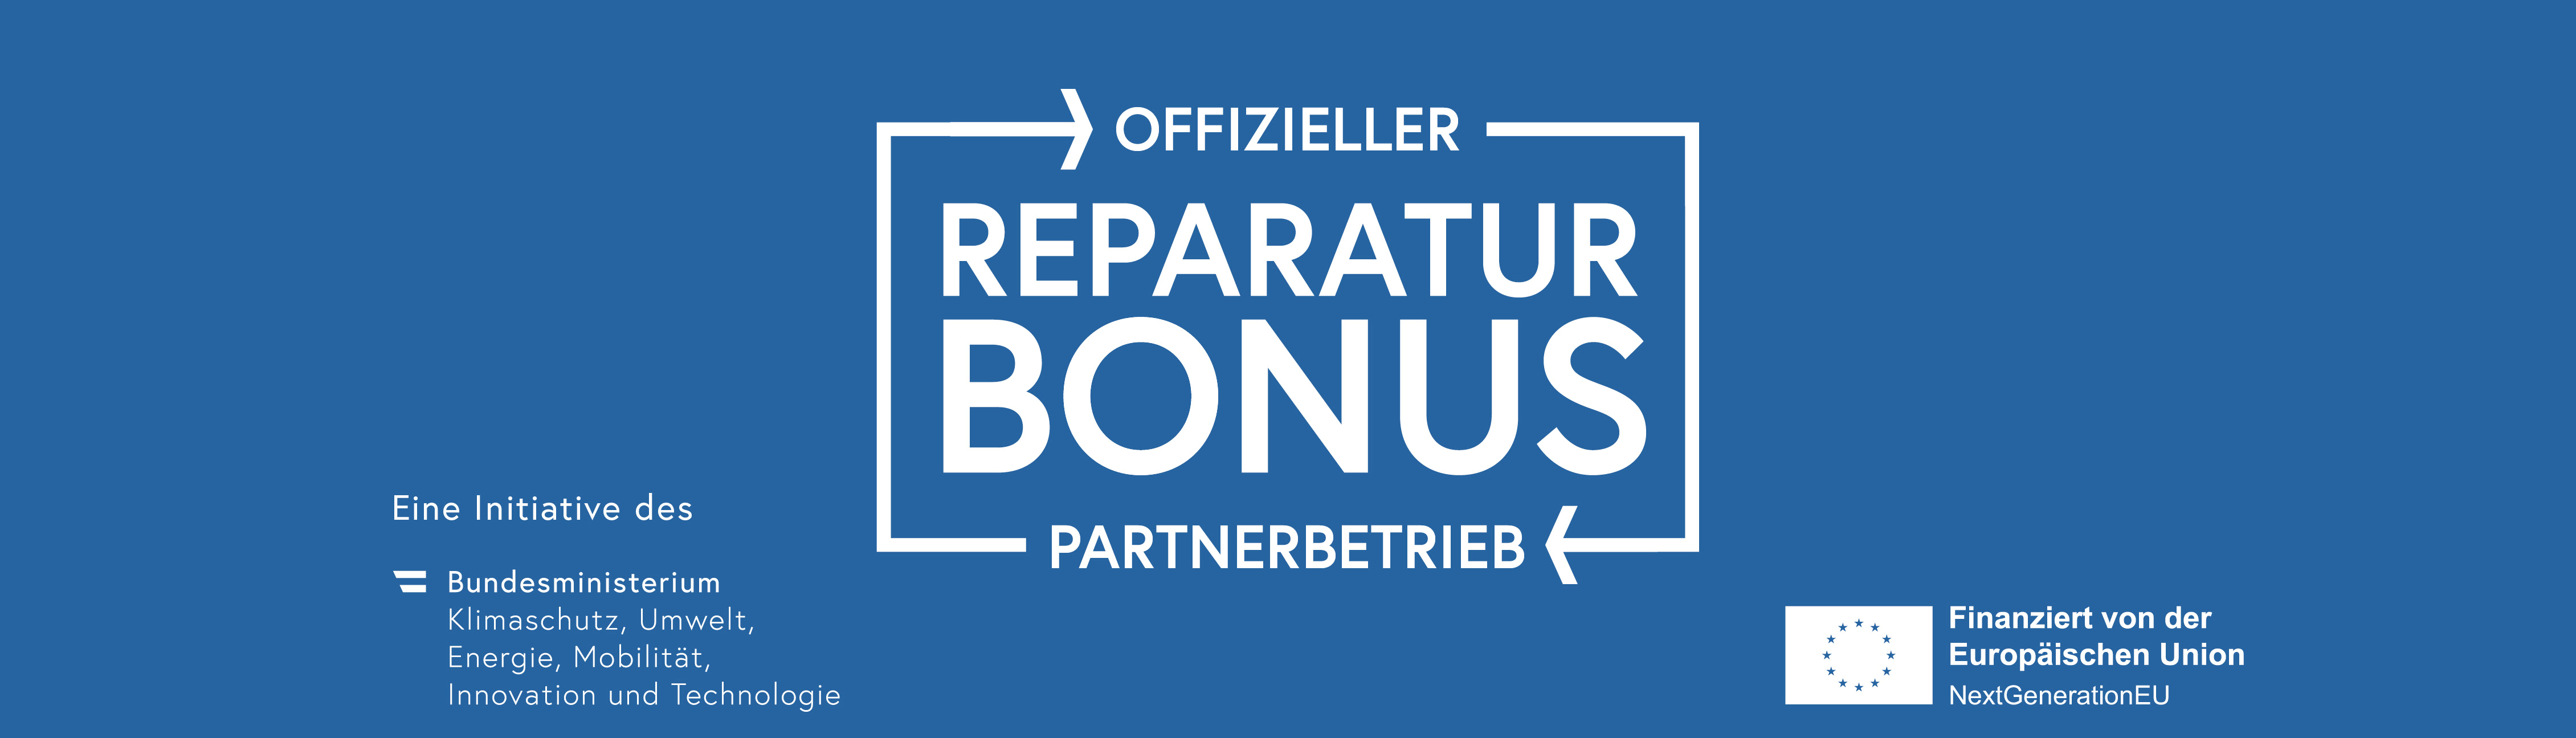 Reparaturbonus-Partner